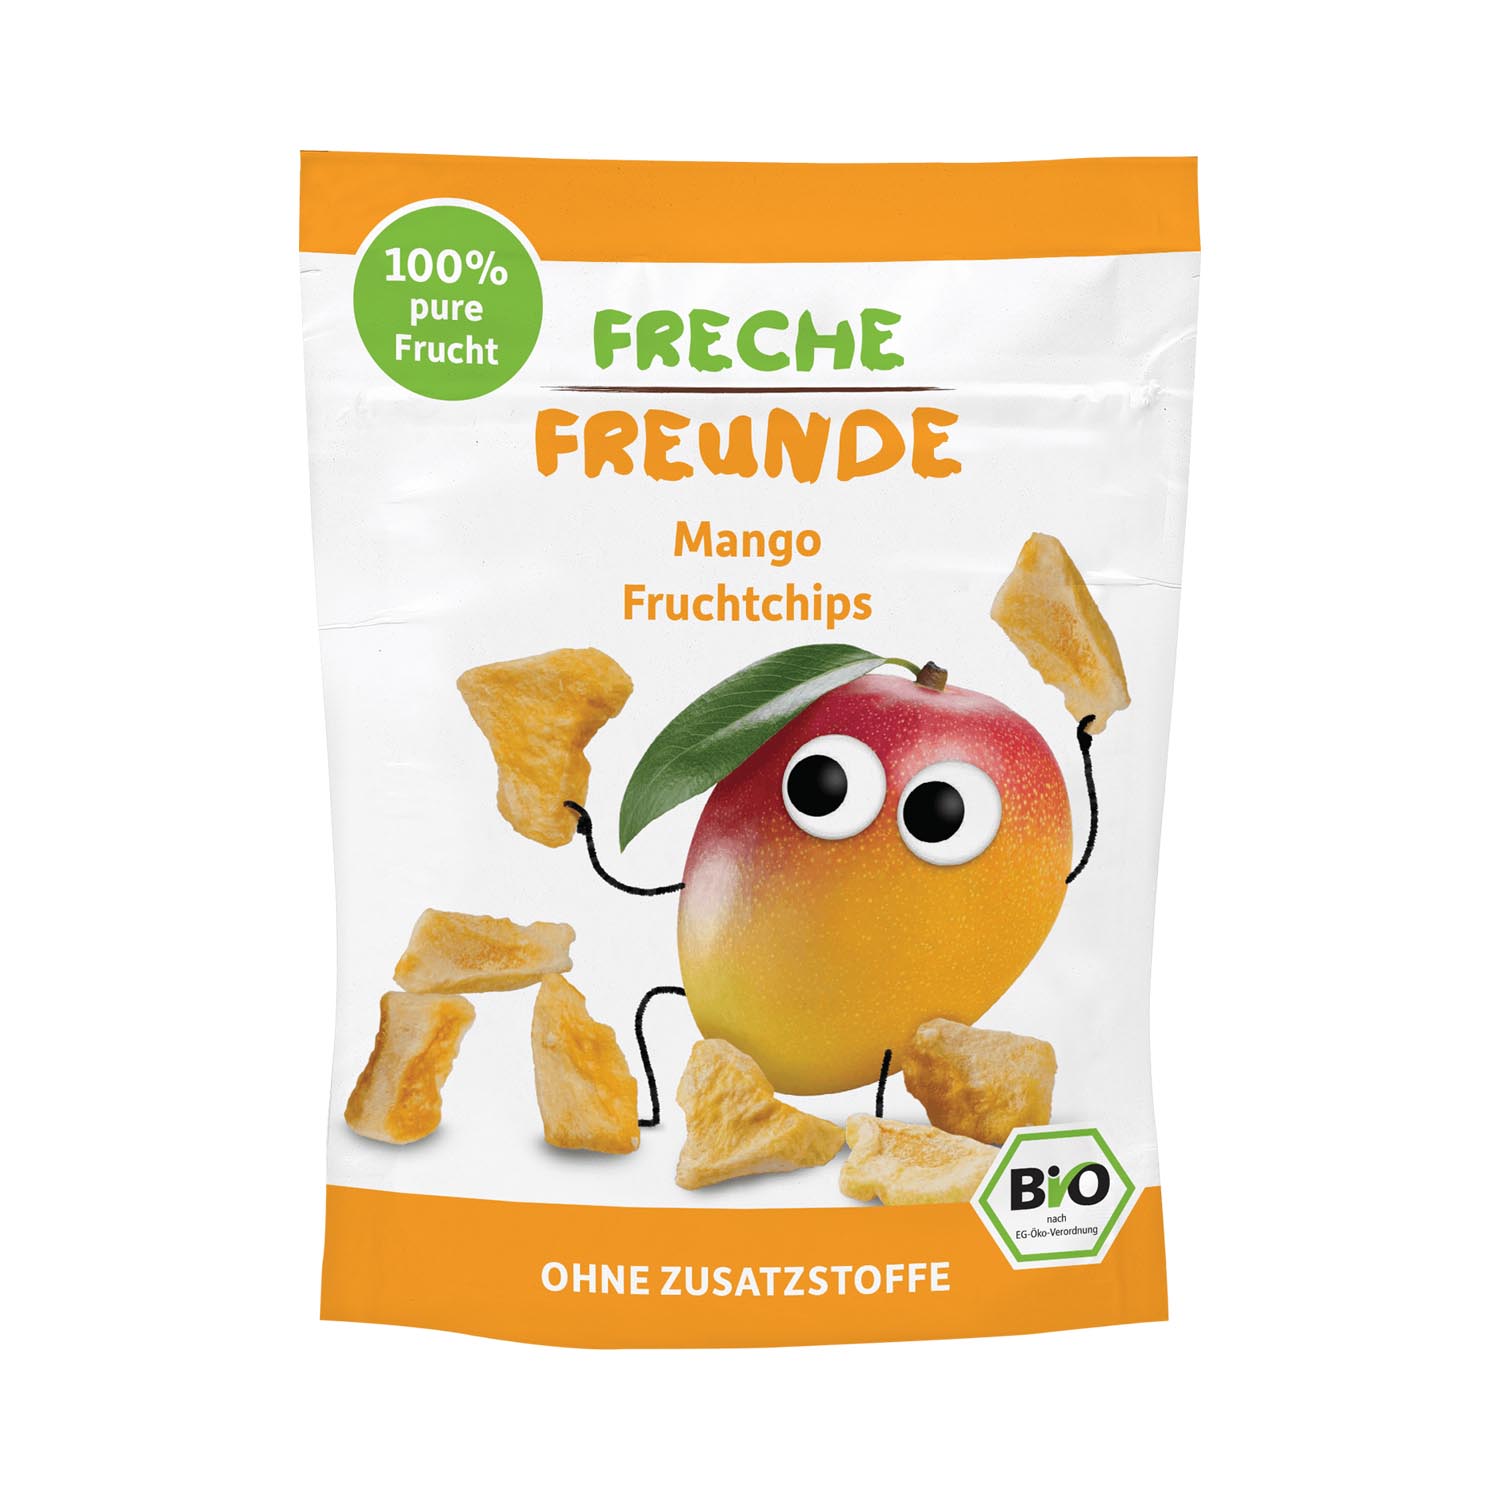 https://frechefreunde.ch/wp-content/uploads/2022/09/Freche-Freunde-4260249143333_Fruchtchips_Mango-7.jpg